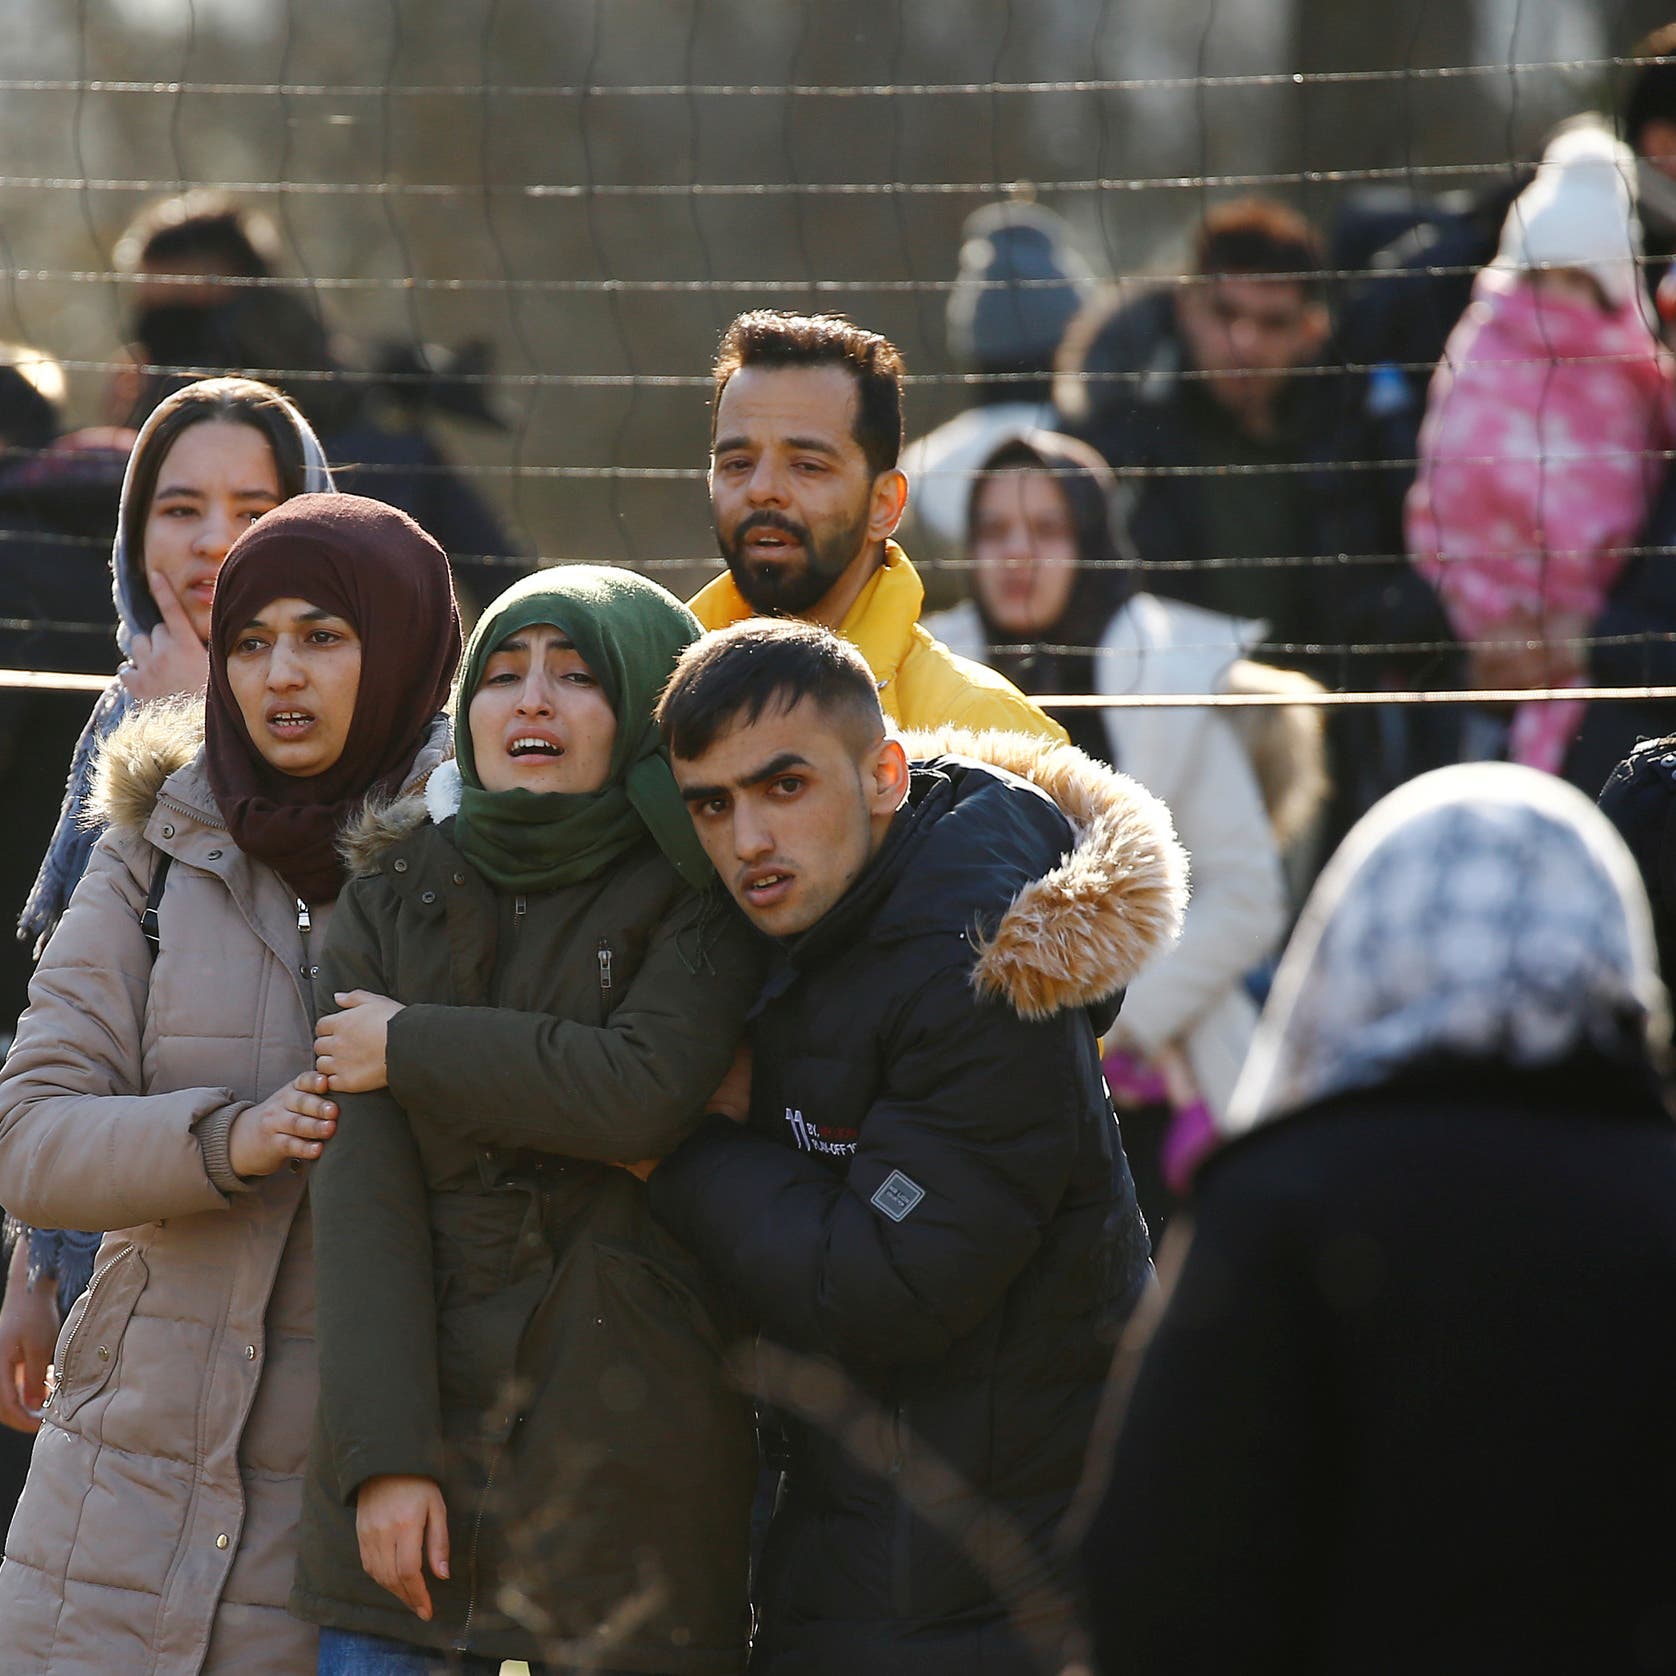 الاتحاد الأوروبي يرفض بشدة "استغلال" تركيا للاجئين